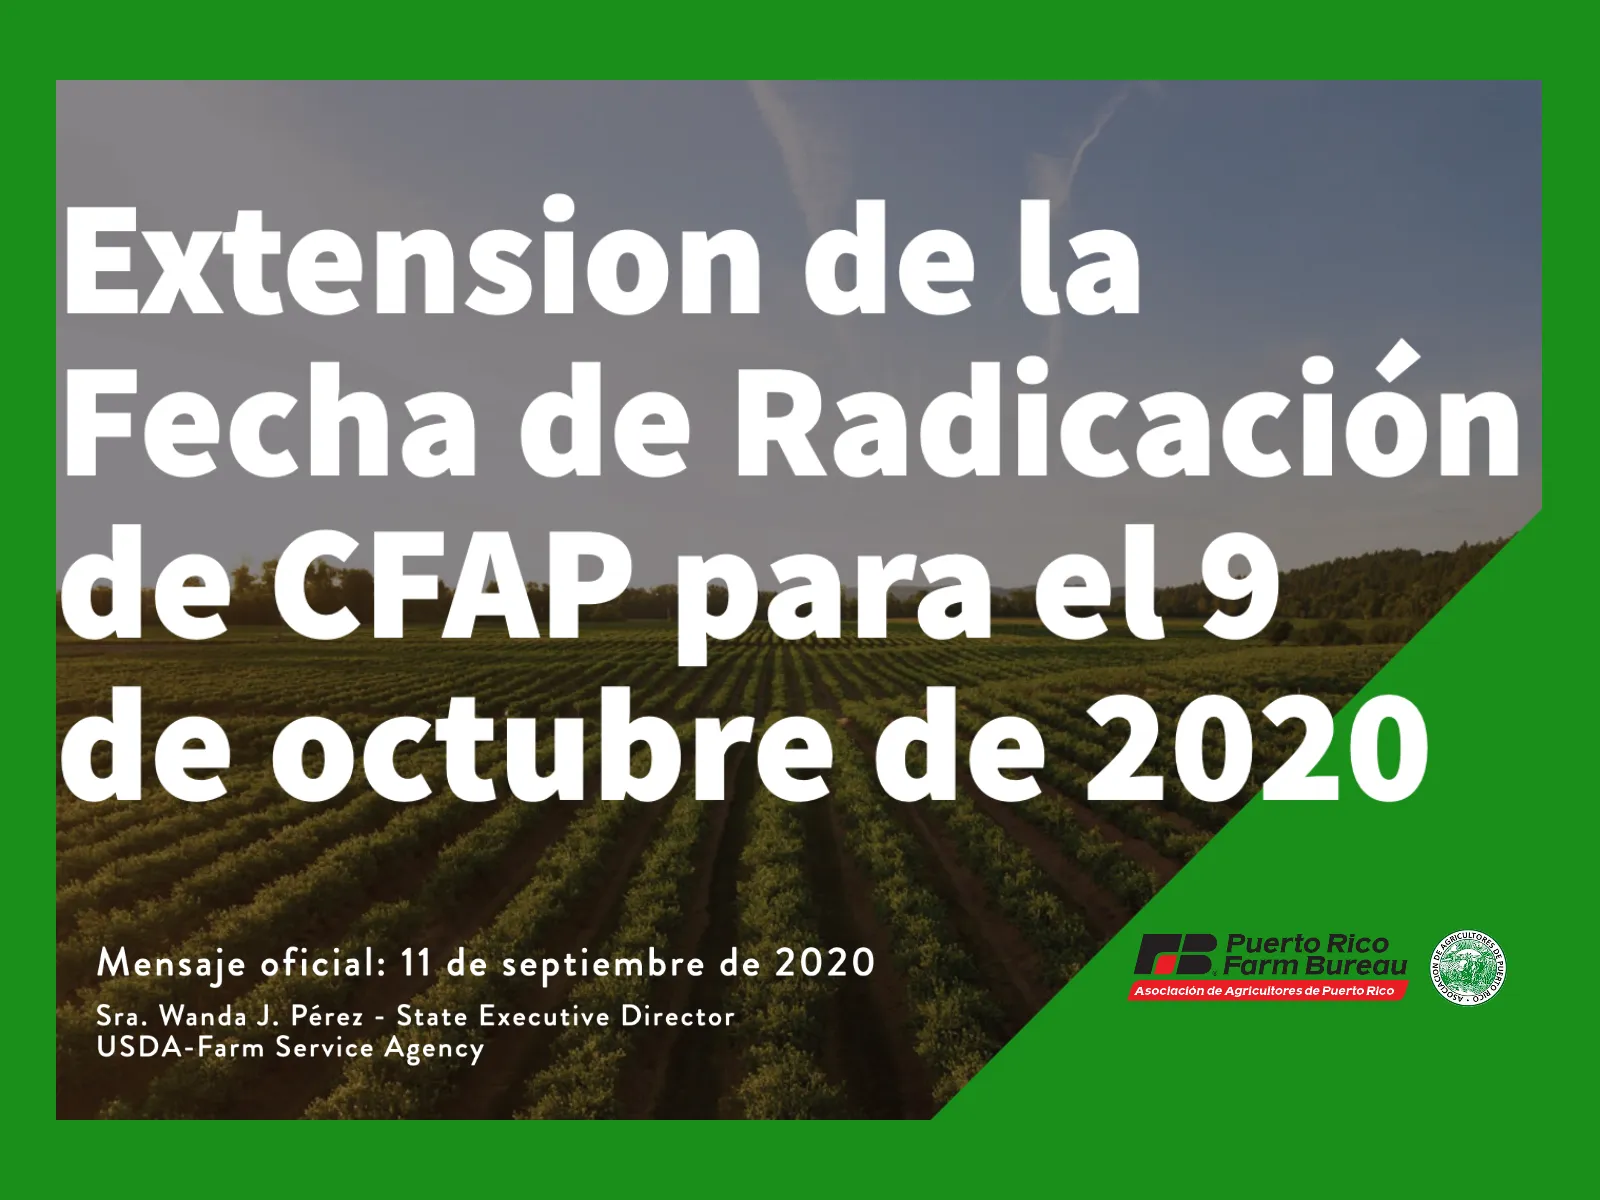  Extension de la Fecha de Radicación de CFAP para el 9 de octubre de 2020